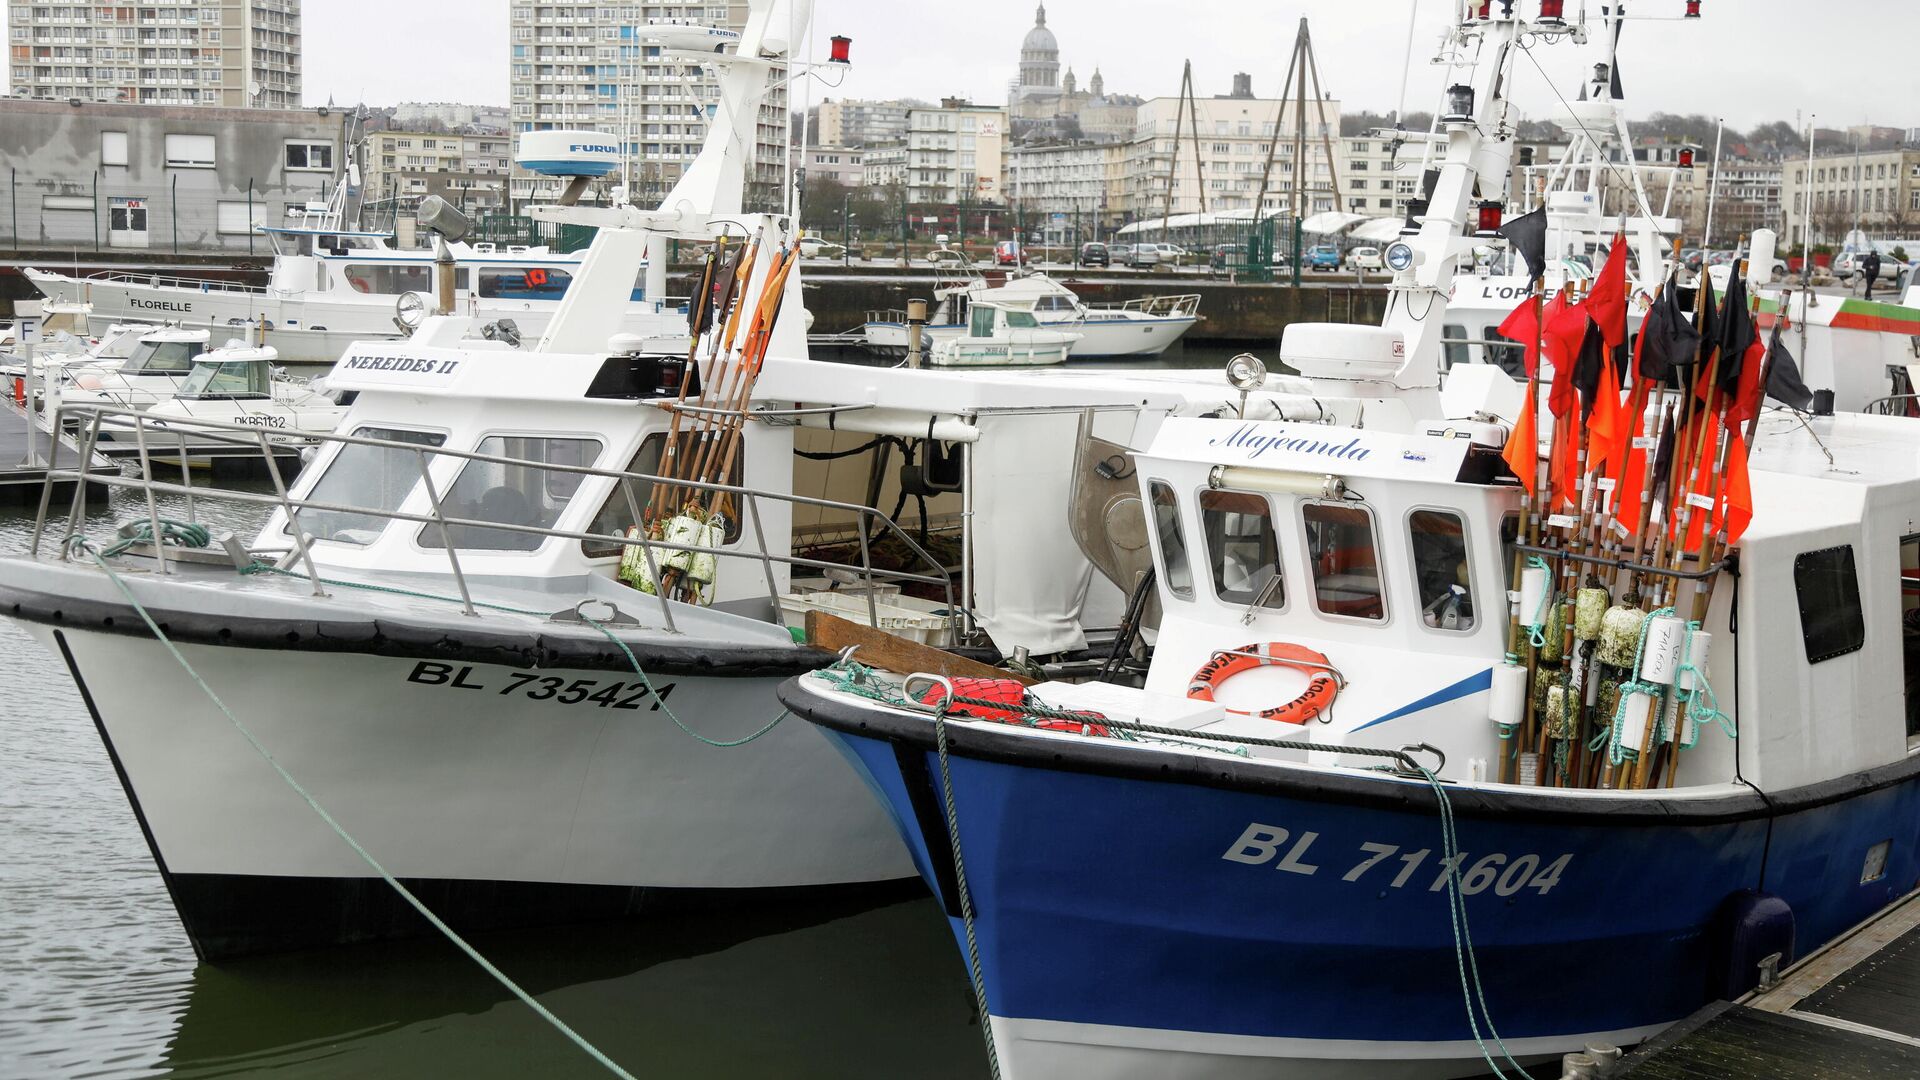 Los barcos de pesca atracados en Boulogne-sur-Mer después de que el Reino Unido y la Unión Europea negociaran un acuerdo comercial de última hora posterior al Brexit, en el norte de Francia, el 28 de diciembre de 2020 - Sputnik Mundo, 1920, 29.11.2021